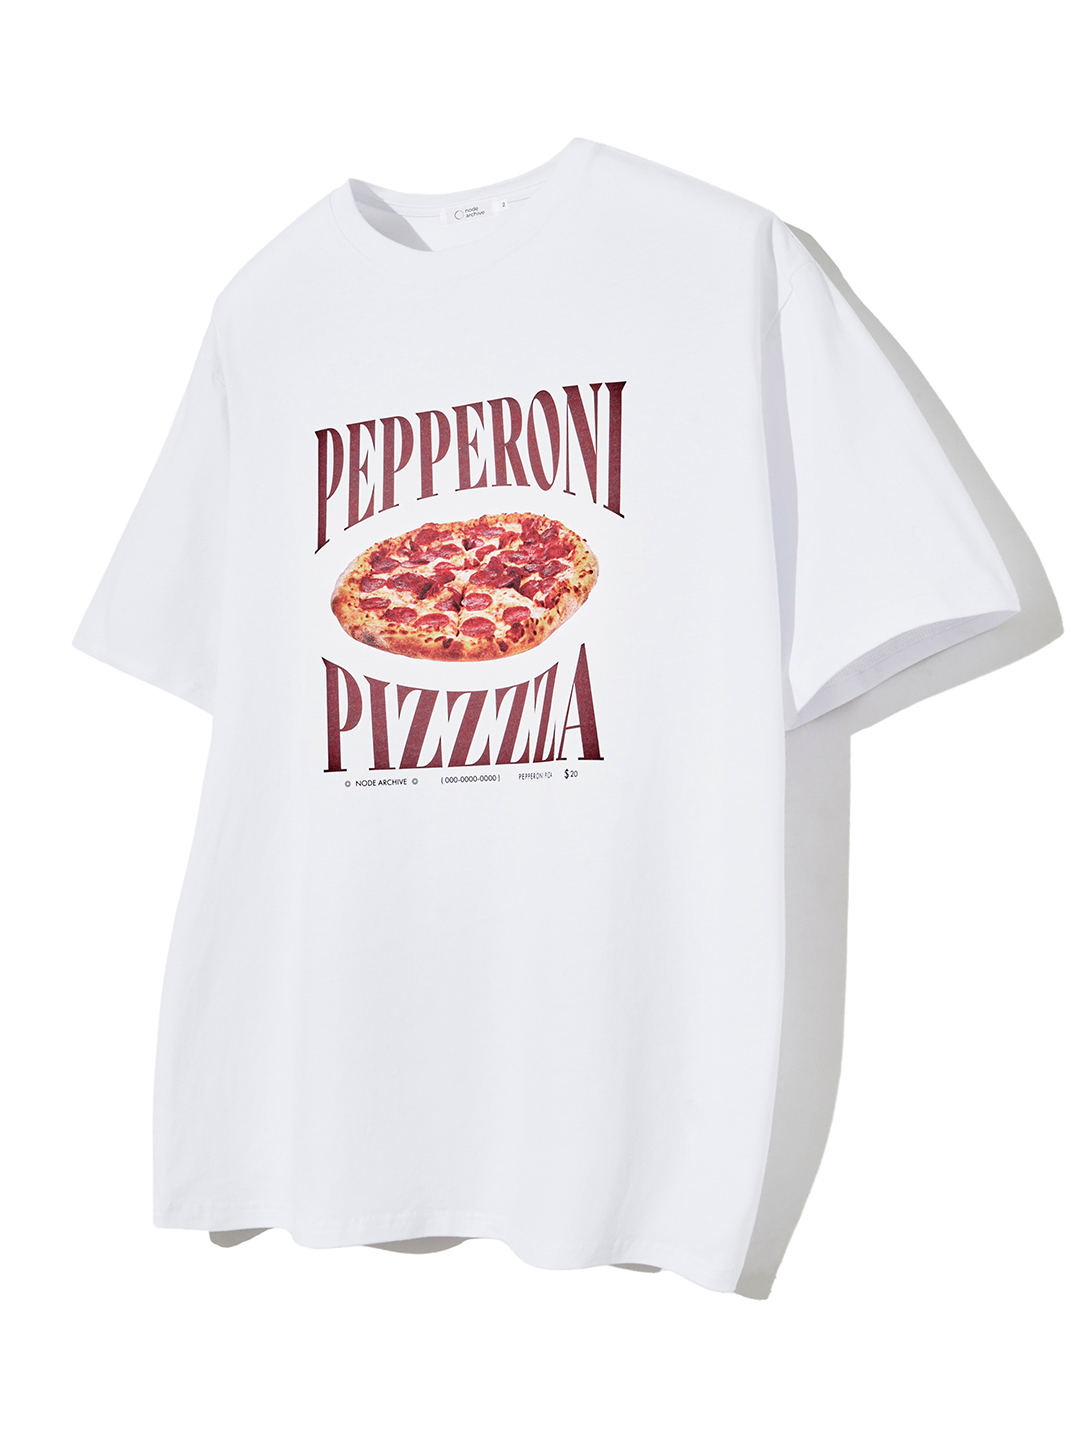 페퍼로니 피자 티셔츠 (화이트)